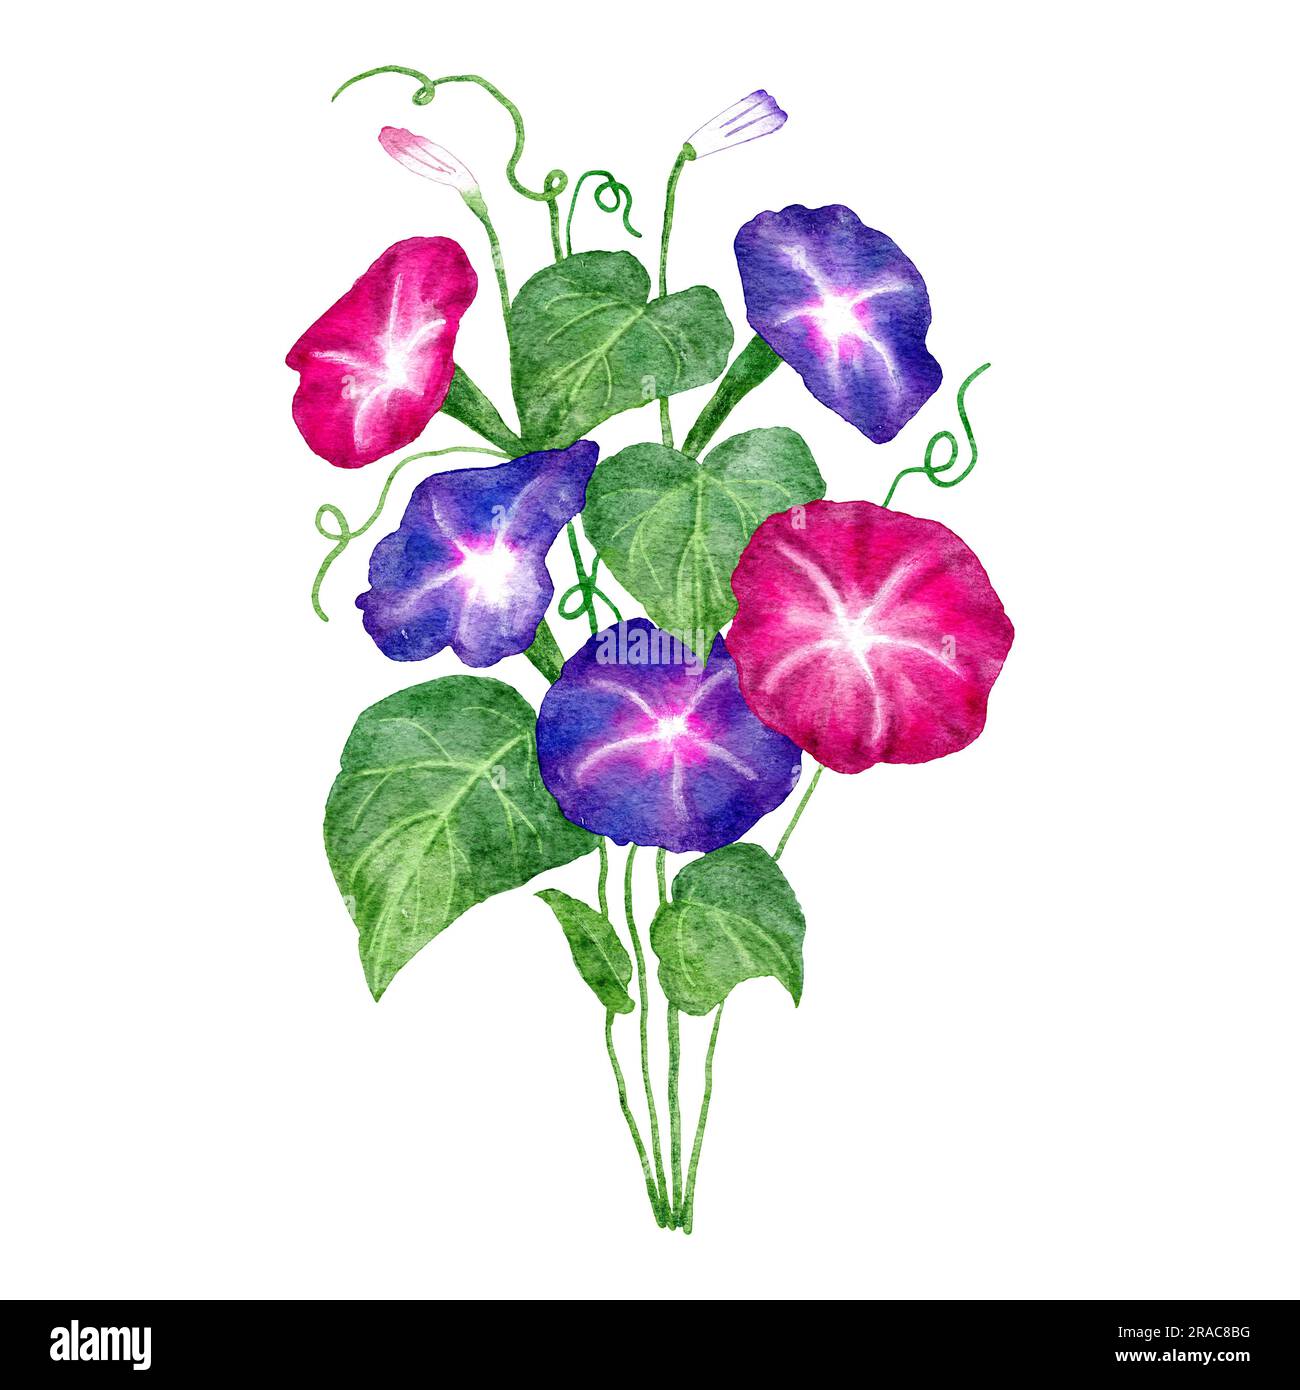 Illustrazione ad acquerello disegnata a mano del fiore glorioso mattutino, floreale di Ipomoea in foglie rosa viola e verdi. Fioritura del giardino, disegno di natura botanica, pianta in stile giapponese, giardinaggio con disegno edera Foto Stock